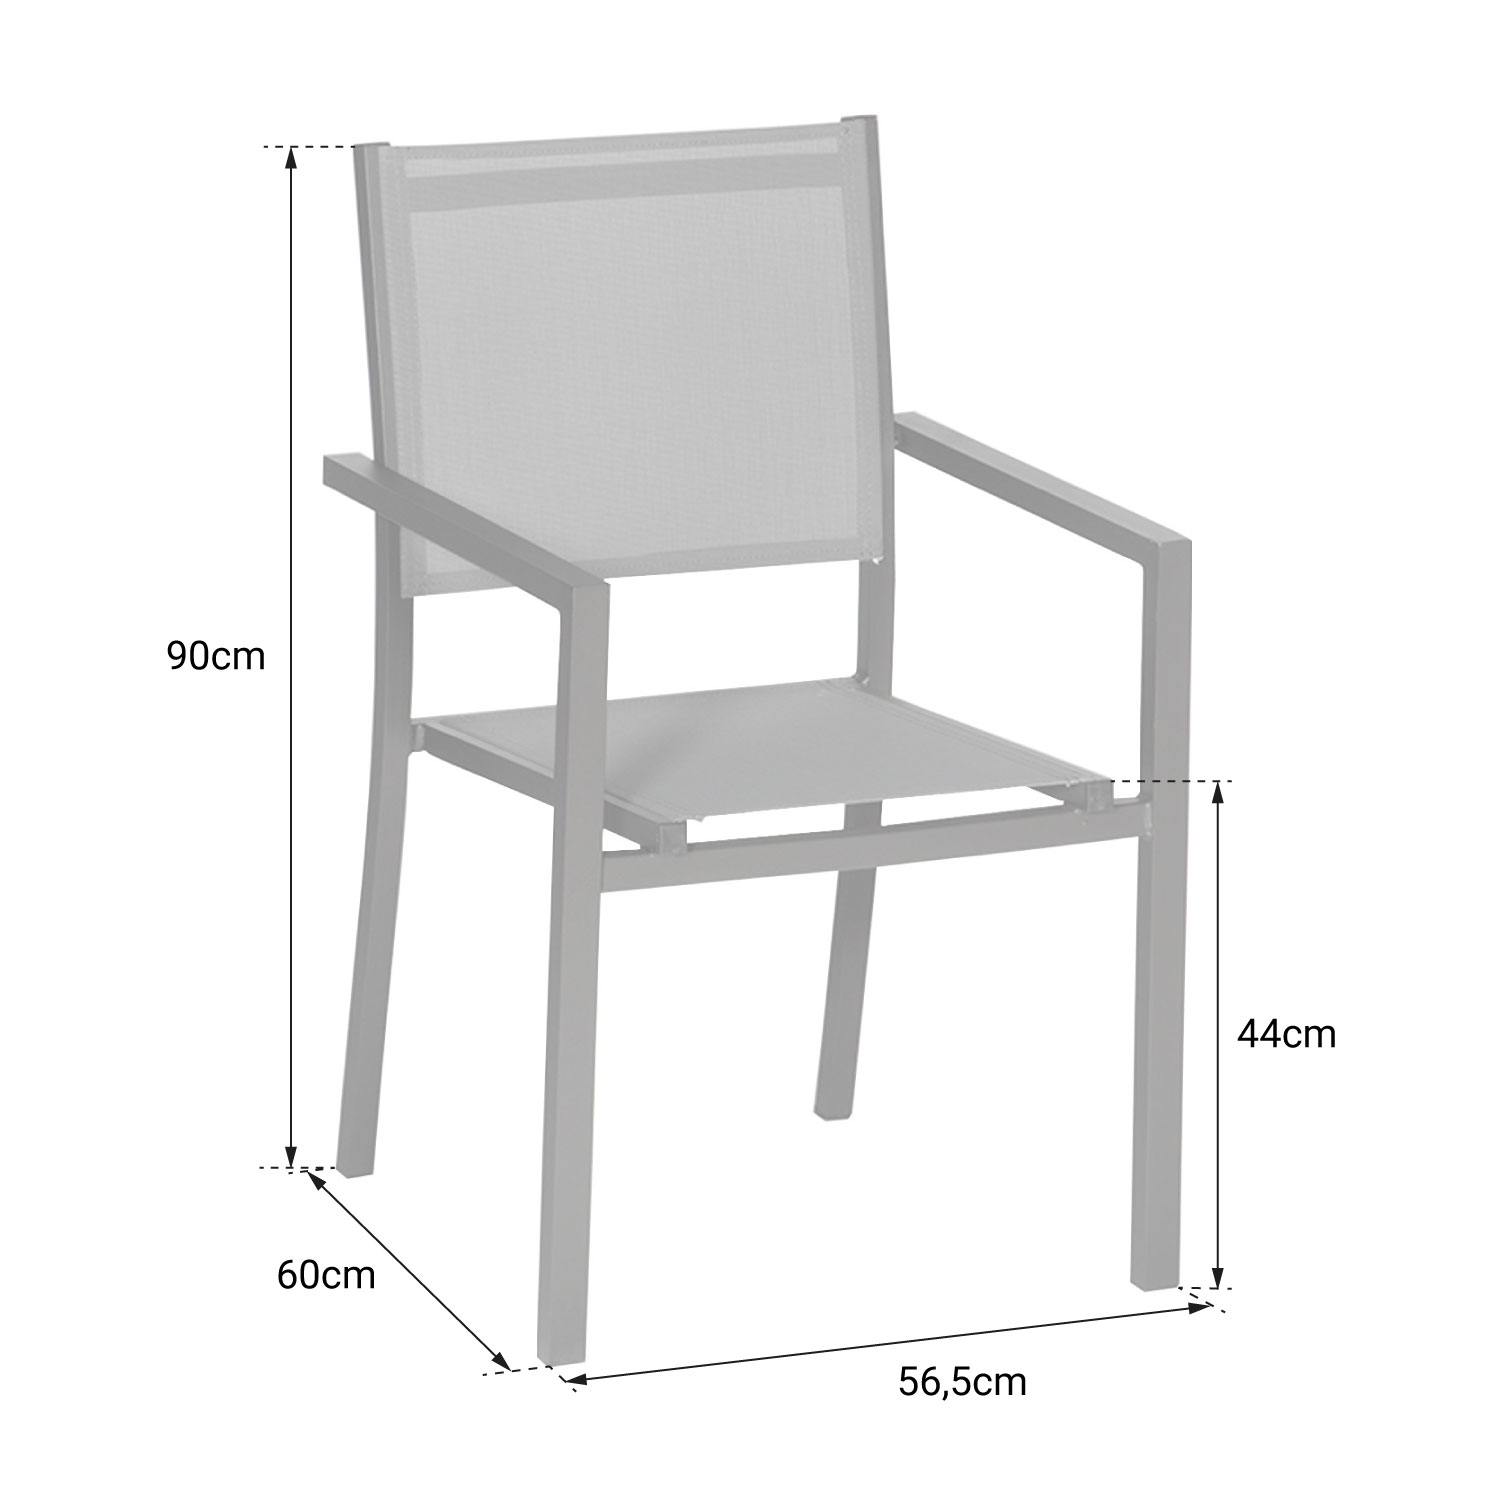 Lot de 8 chaises en aluminium anthracite - textilène gris